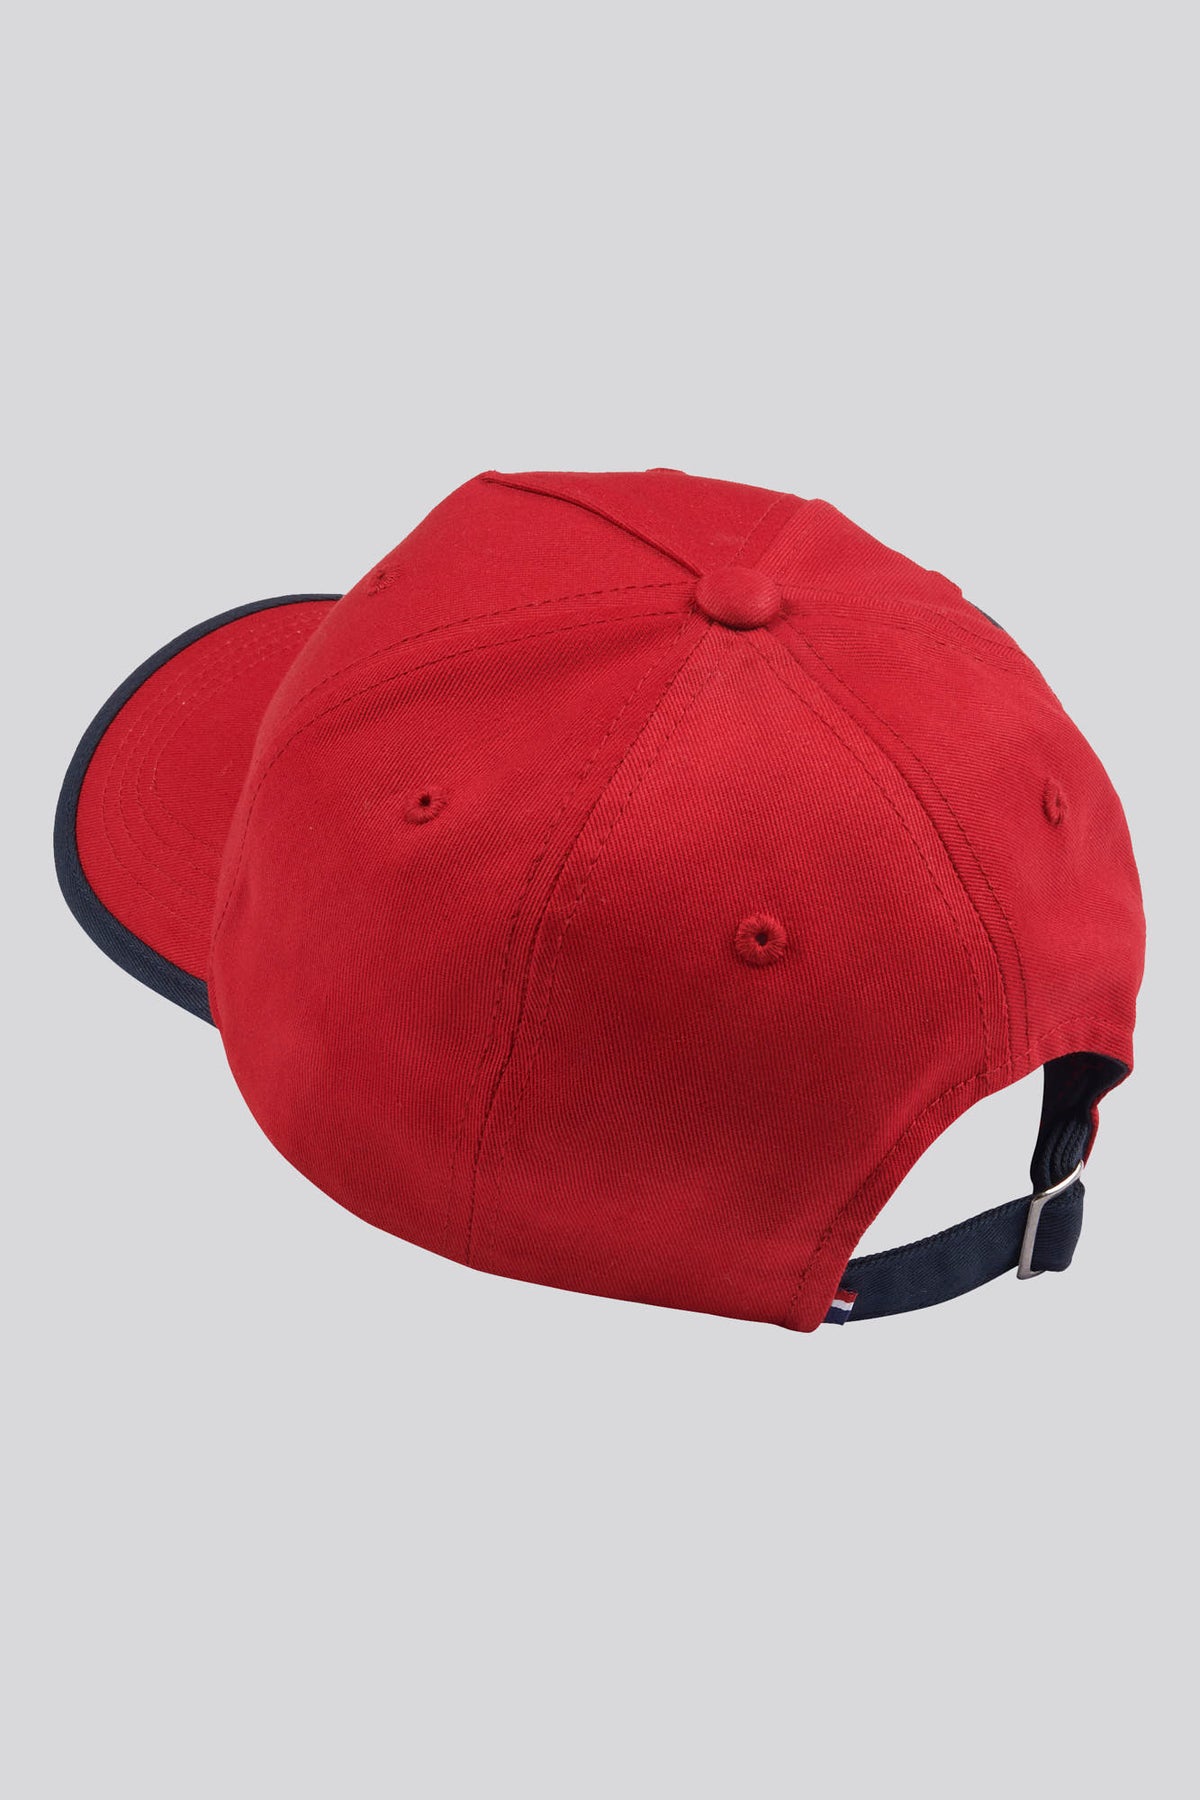 Mens Player 3 Baseball Cap in Haute Red